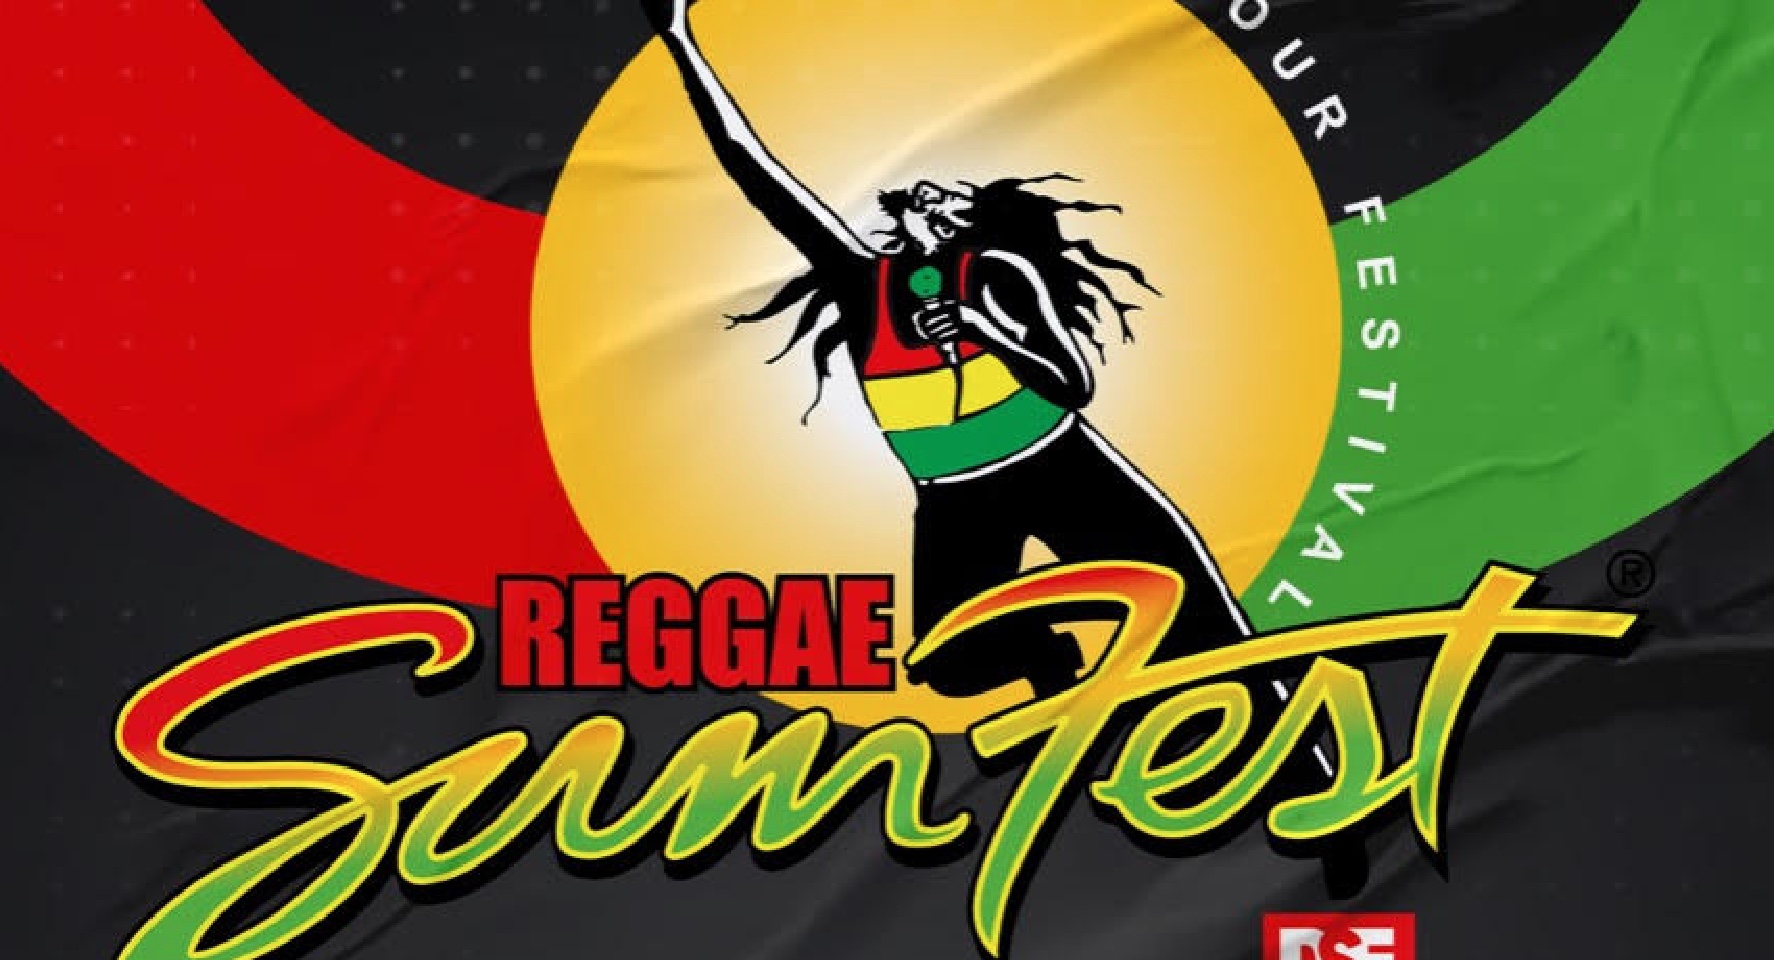 reggae tour dates 2023